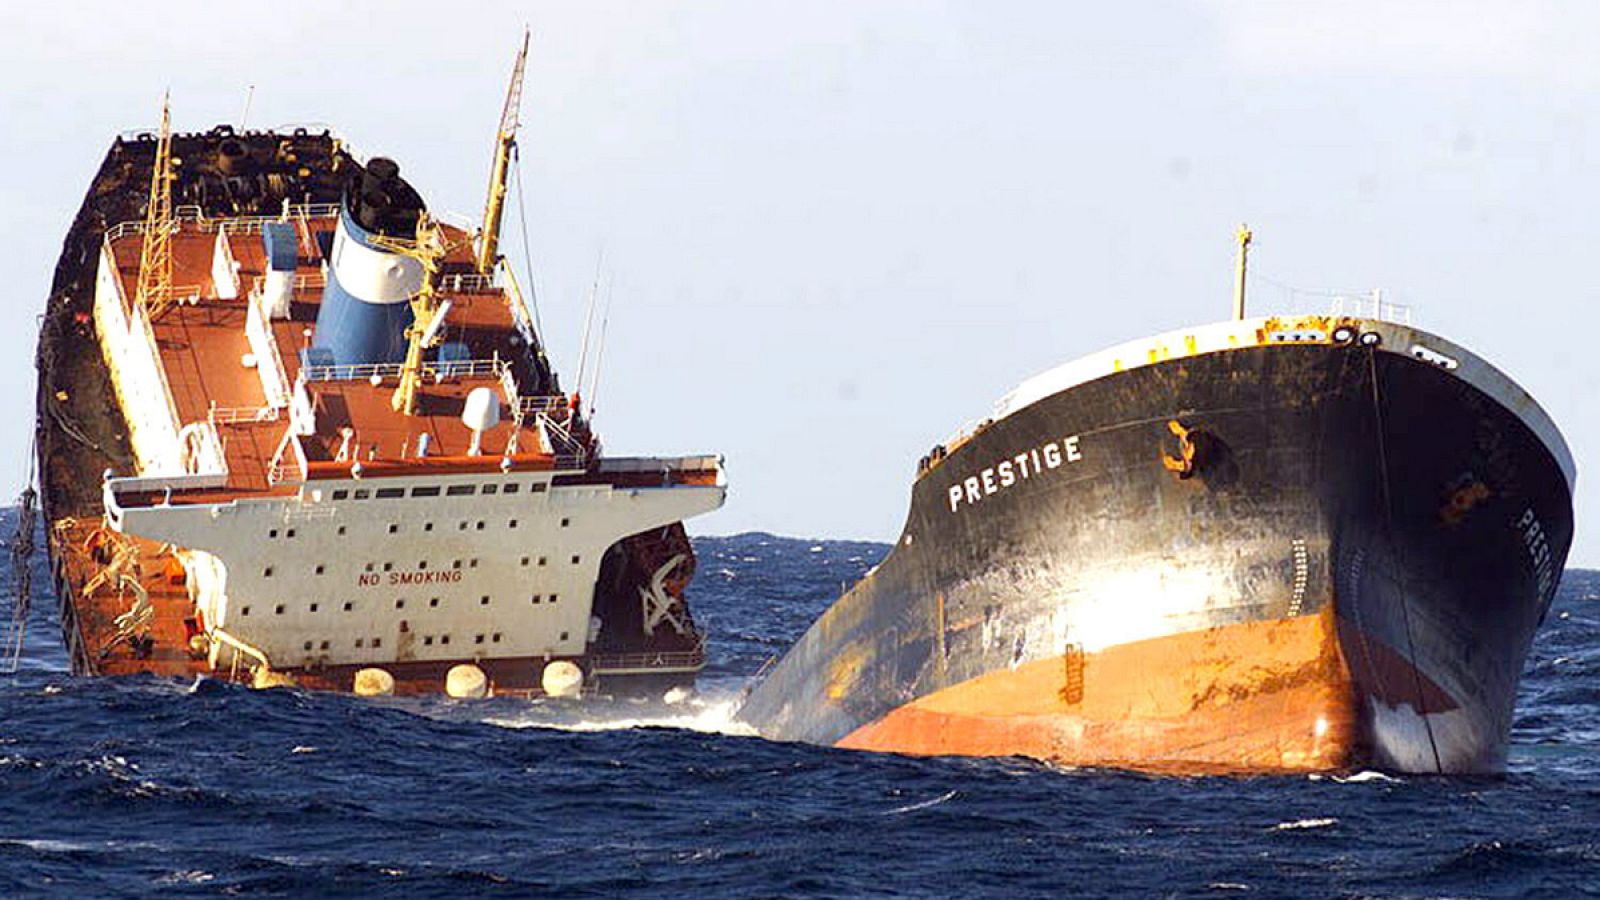 Fotografía del petrolero "Prestige" partido en dos, realizada desde la Fragata "Baleares" de la Armada Española.